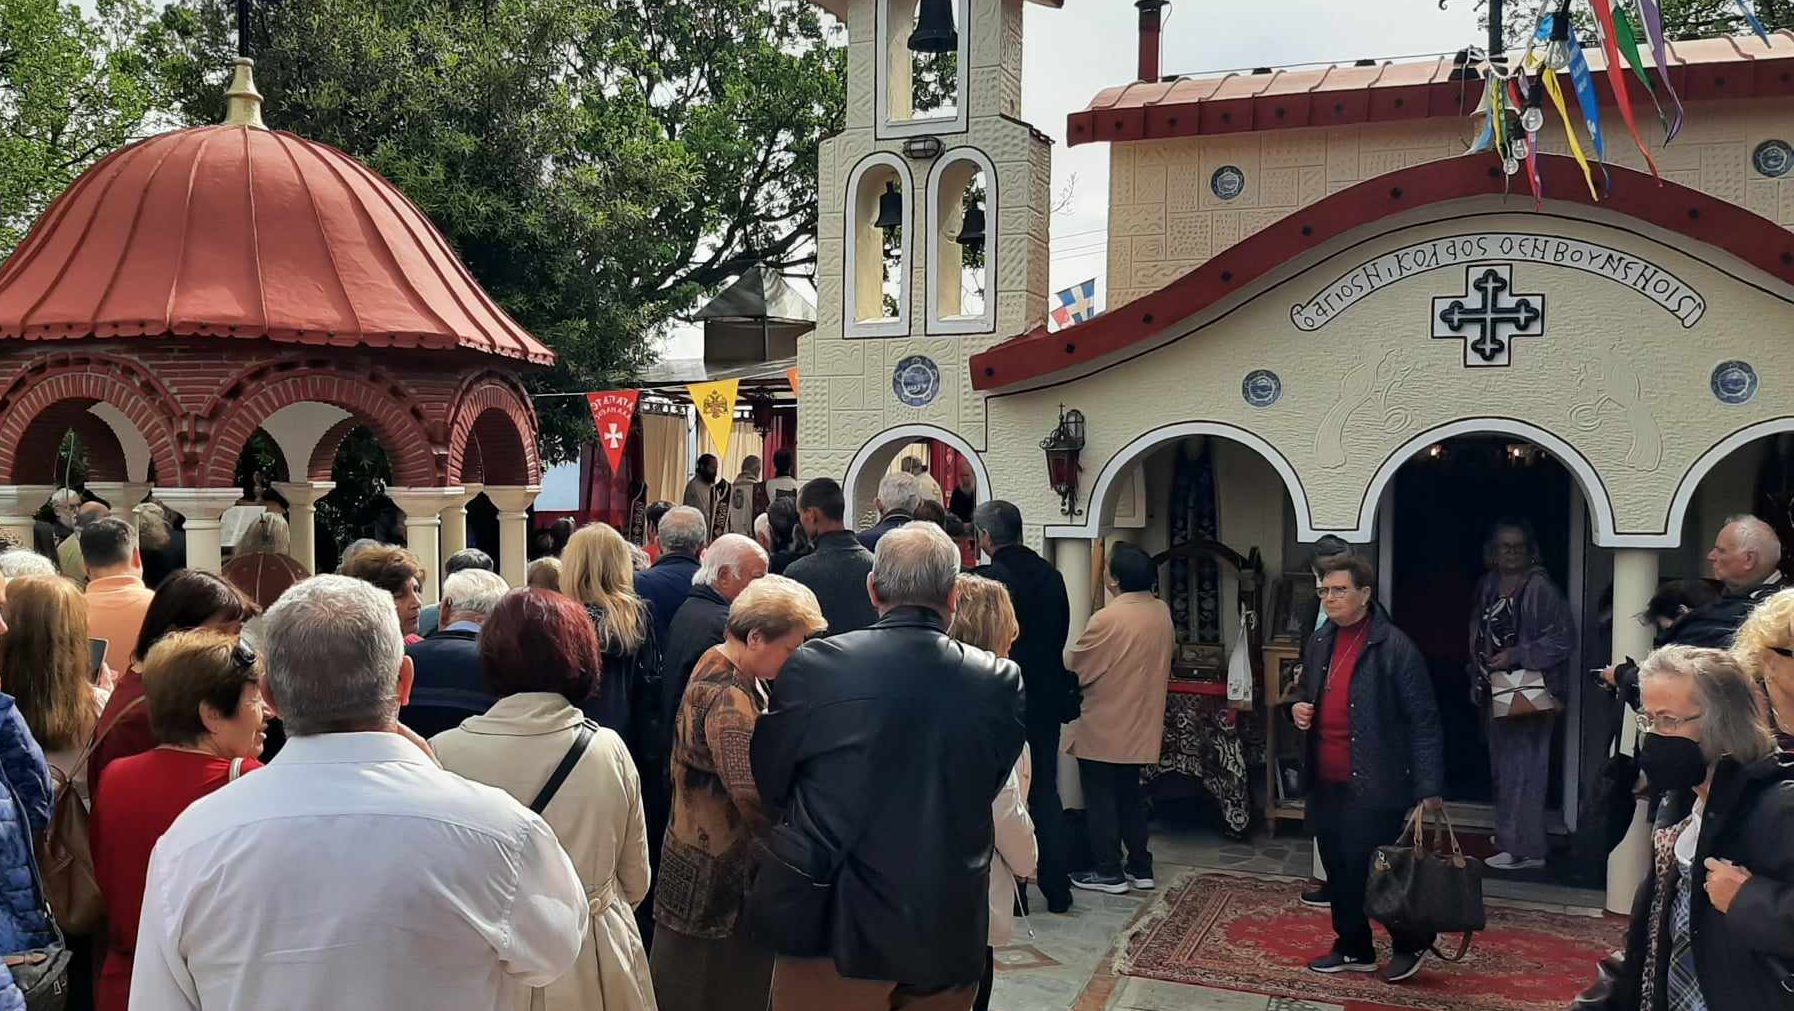 Εύβοια: Έτσι γιόρτασαν τον Άγιο Νικόλαο εν Βουνένοις στα γραφικά Κούτουρλα (εικόνες)